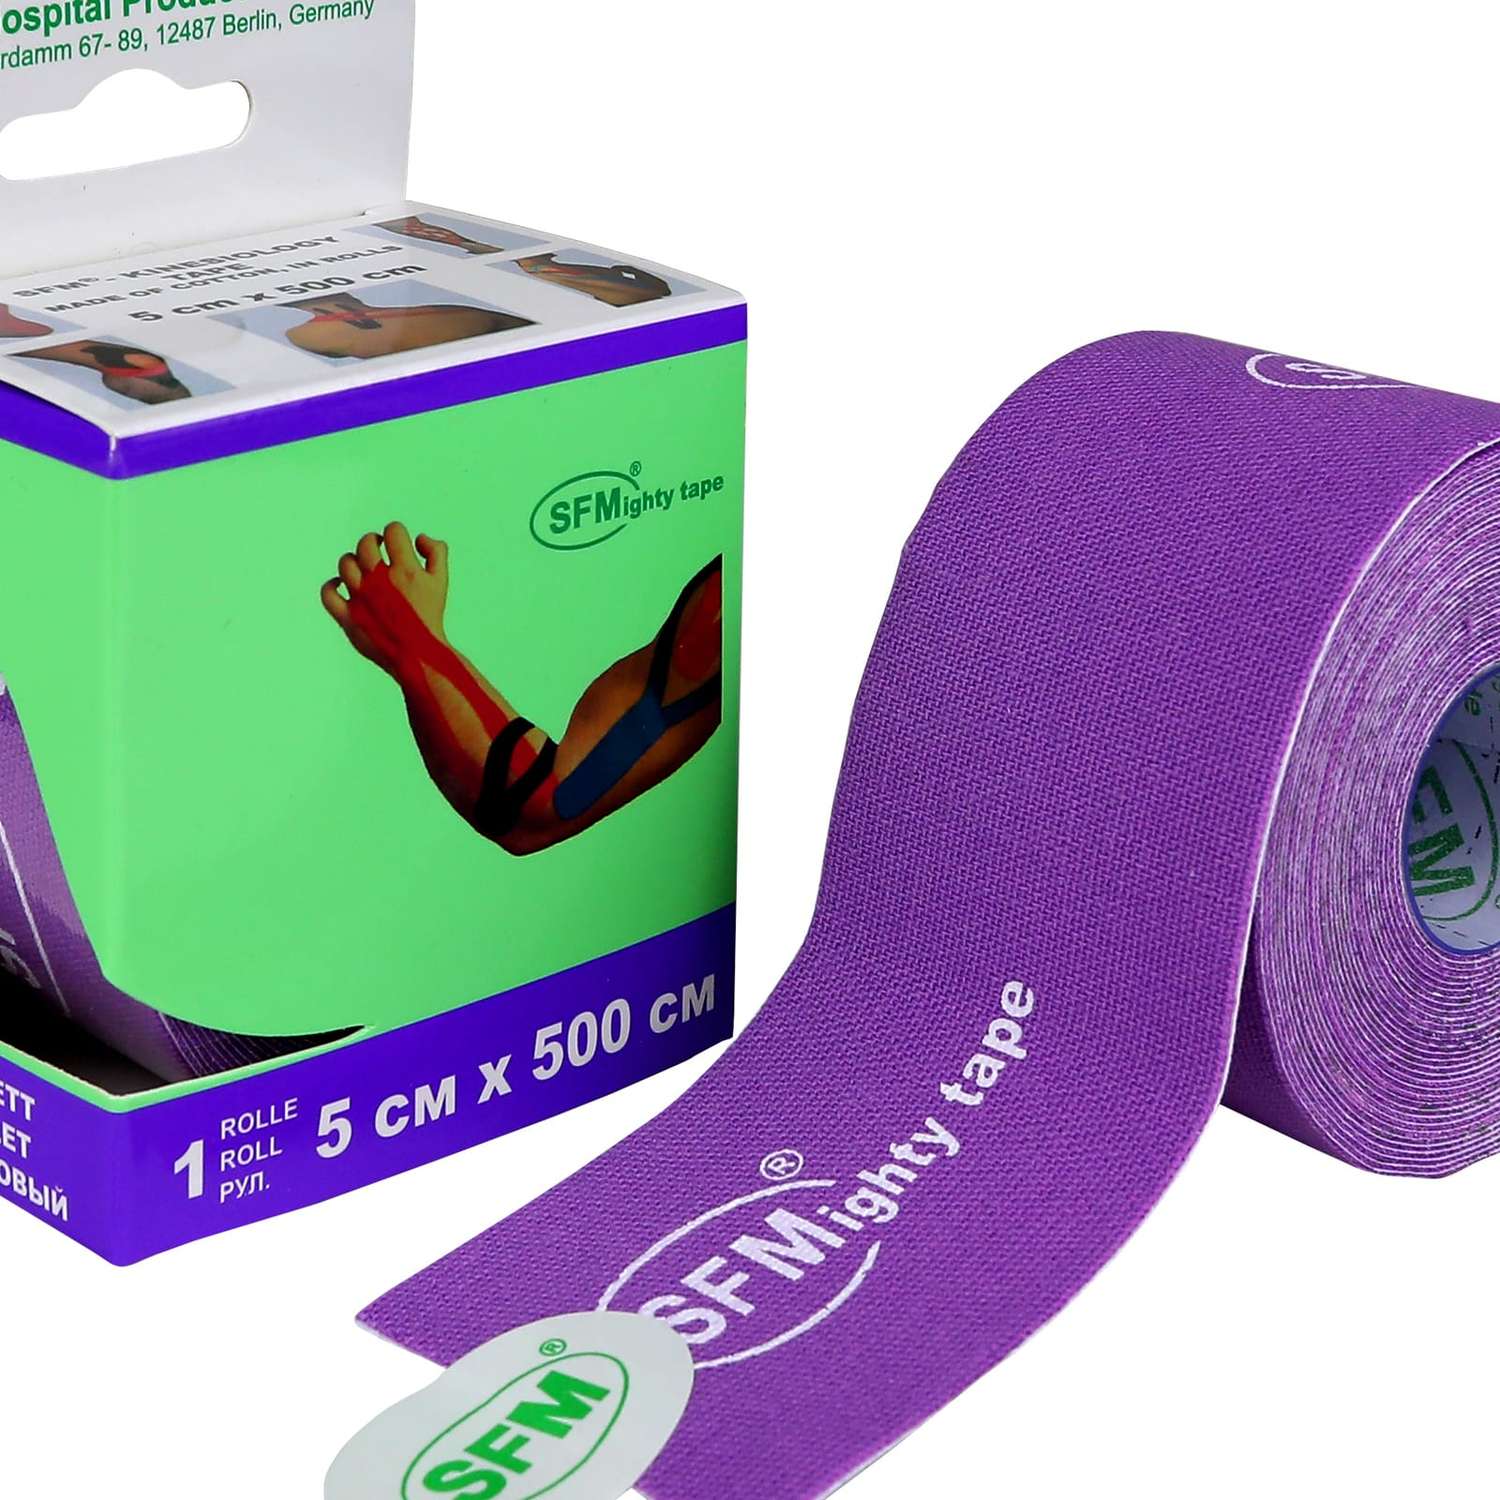 Кинезиотейп SFM Hospital Products Plaster на хлопковой основе 5х500 см фиолетового цвета в диспенсере с логотипом - фото 2